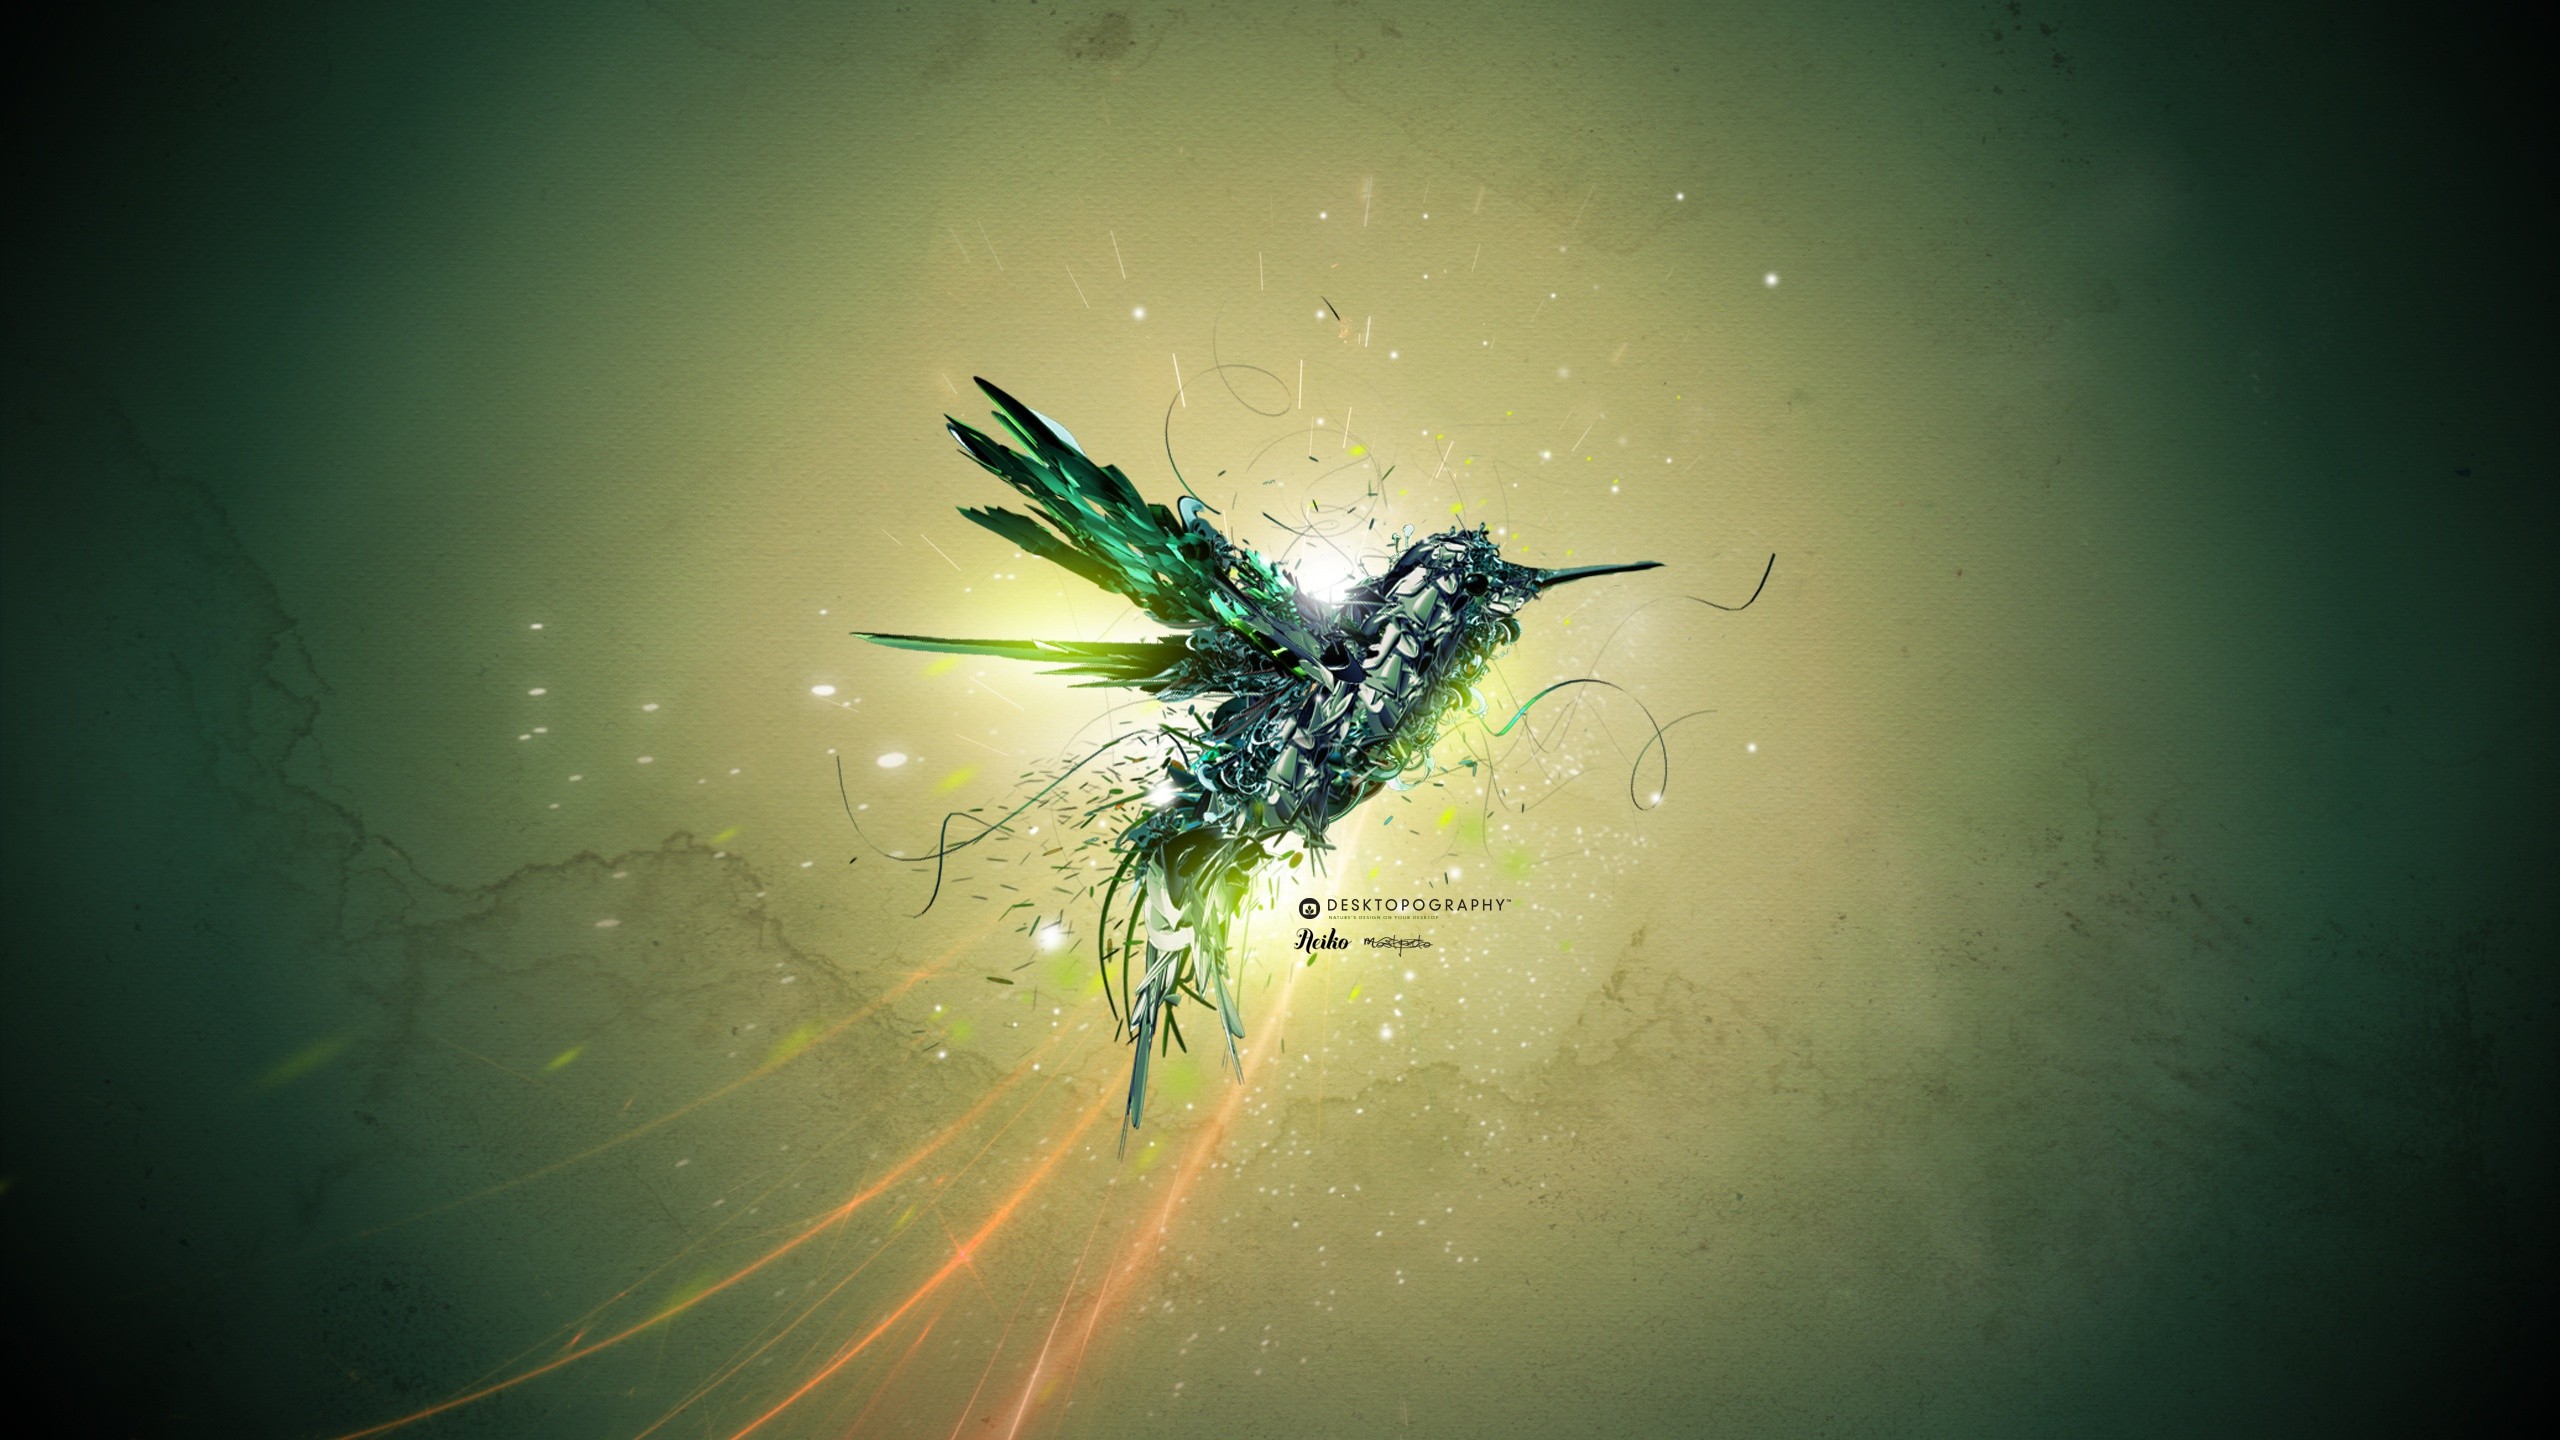 General 2560x1440 hummingbirds fantasy art Desktopography animals abstract birds digital art